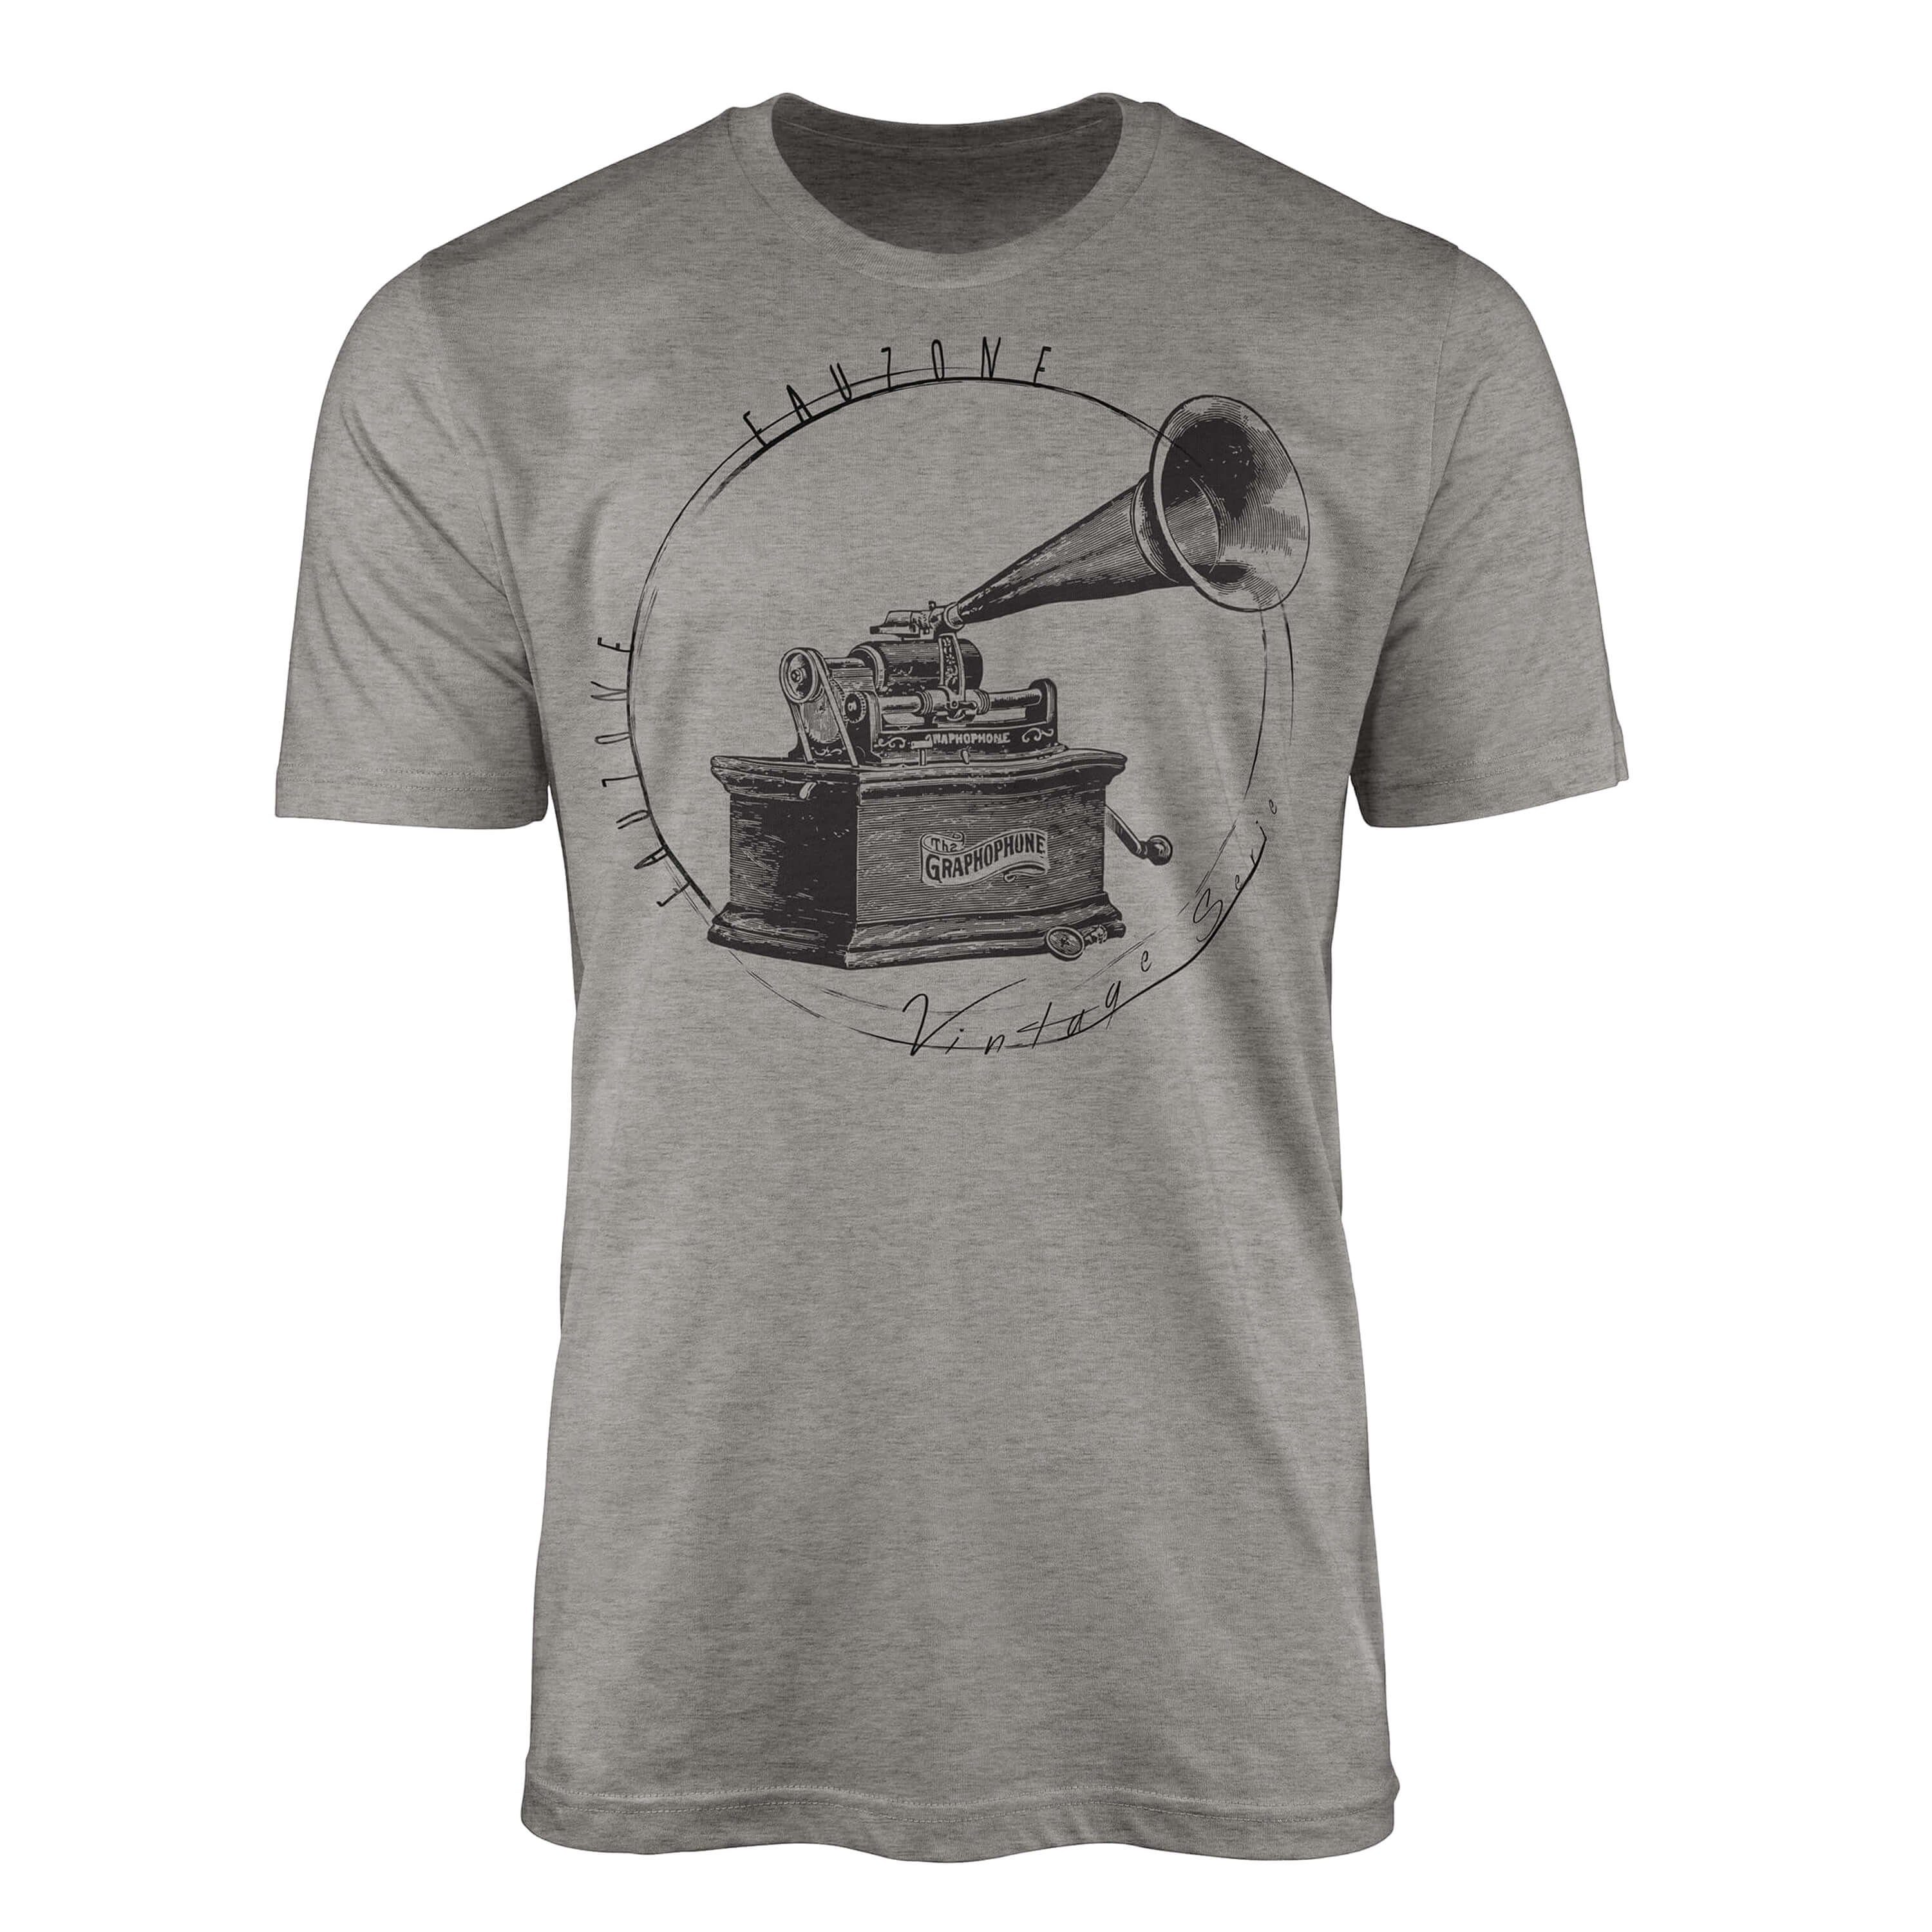 Sinus Art T-Shirt Vintage Herren T-Shirt Grammophon Ash